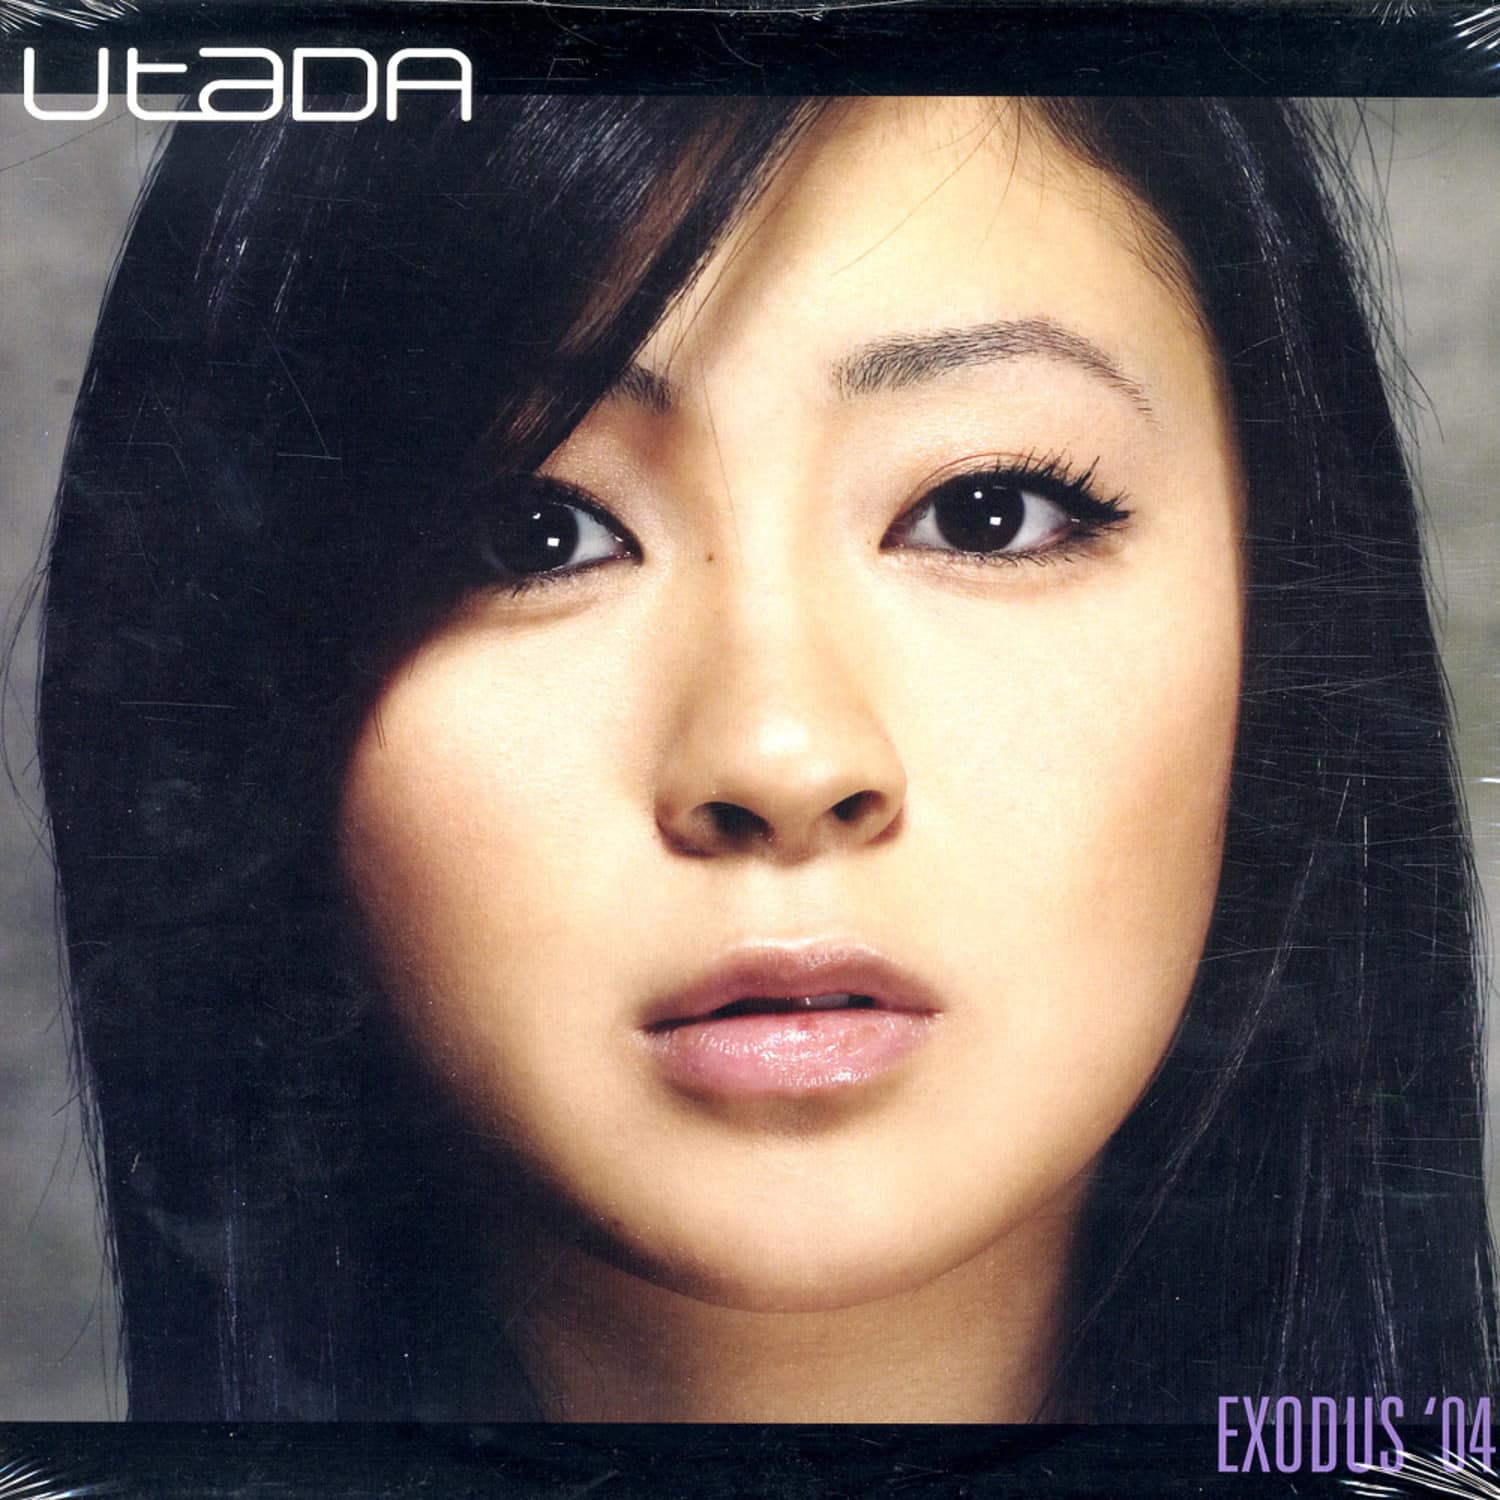 Utada - EXODUS 04 